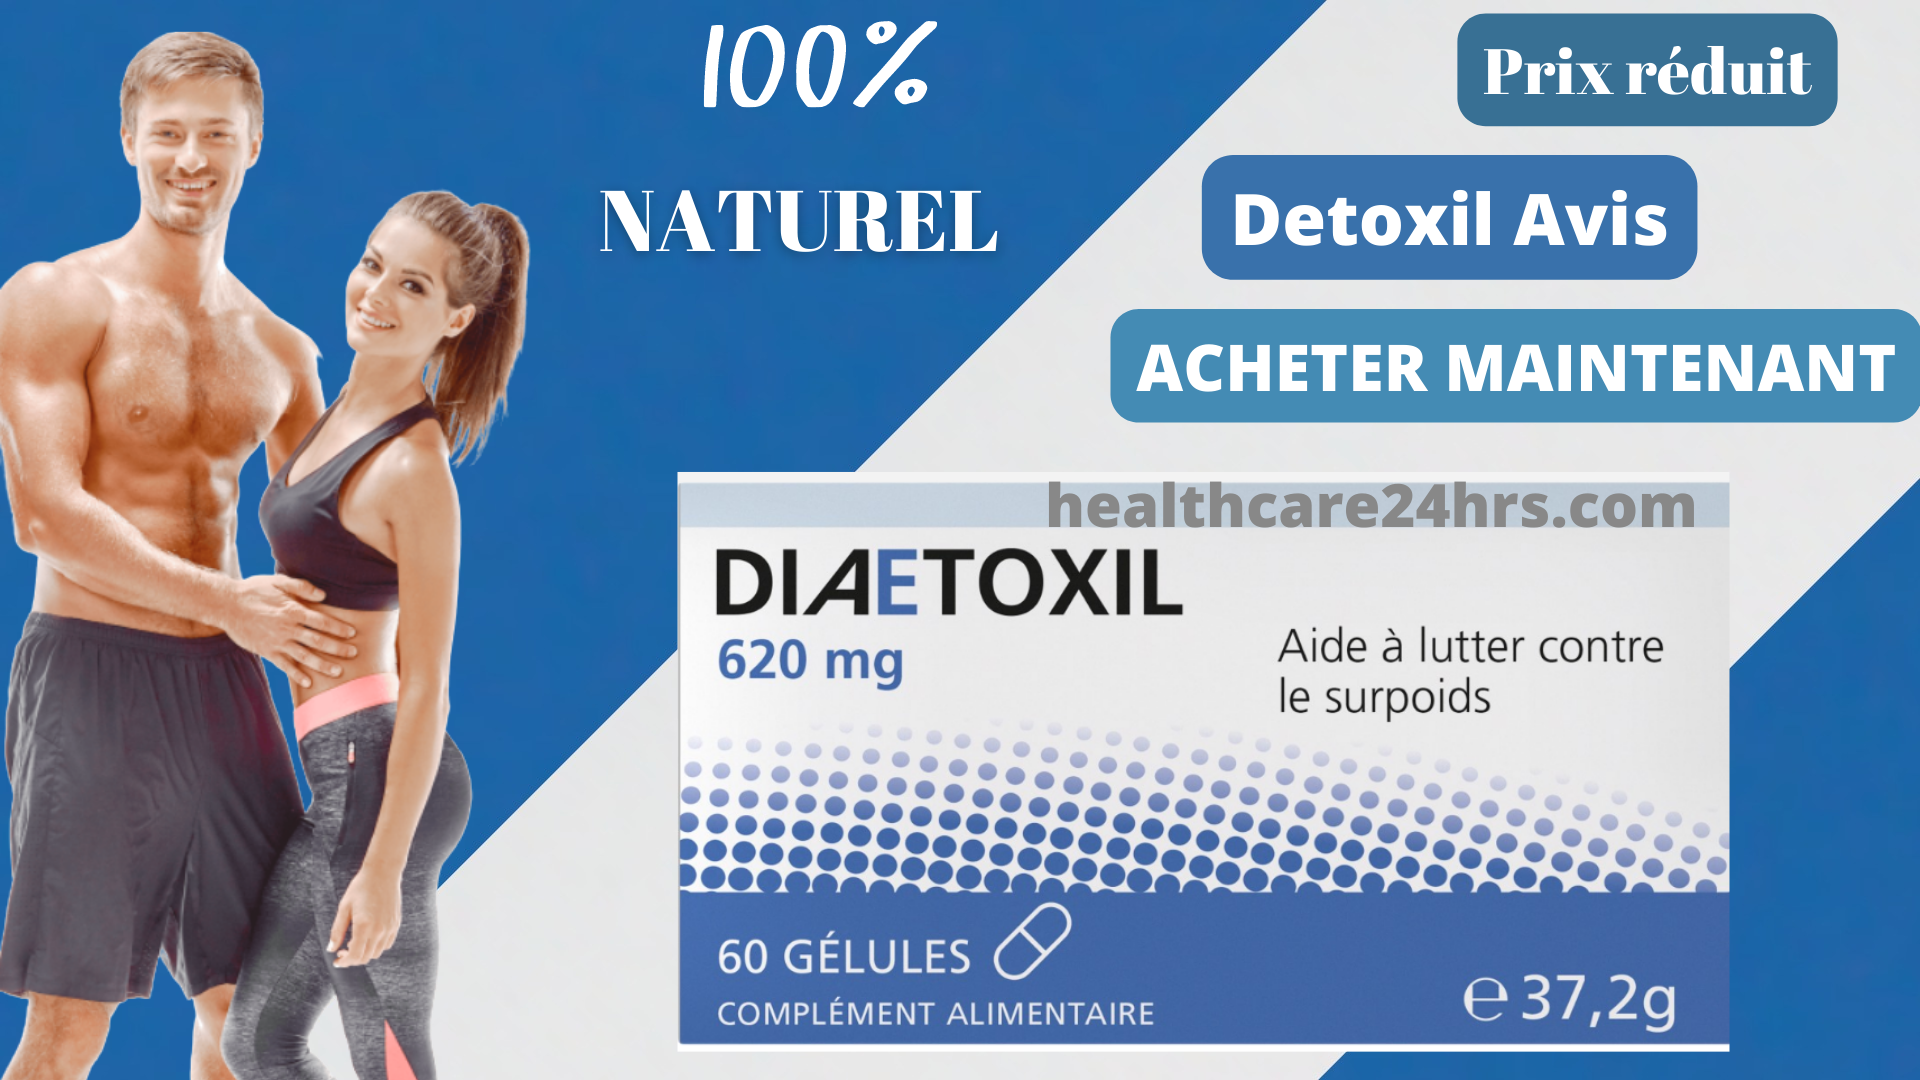 Detoxil France 3.png